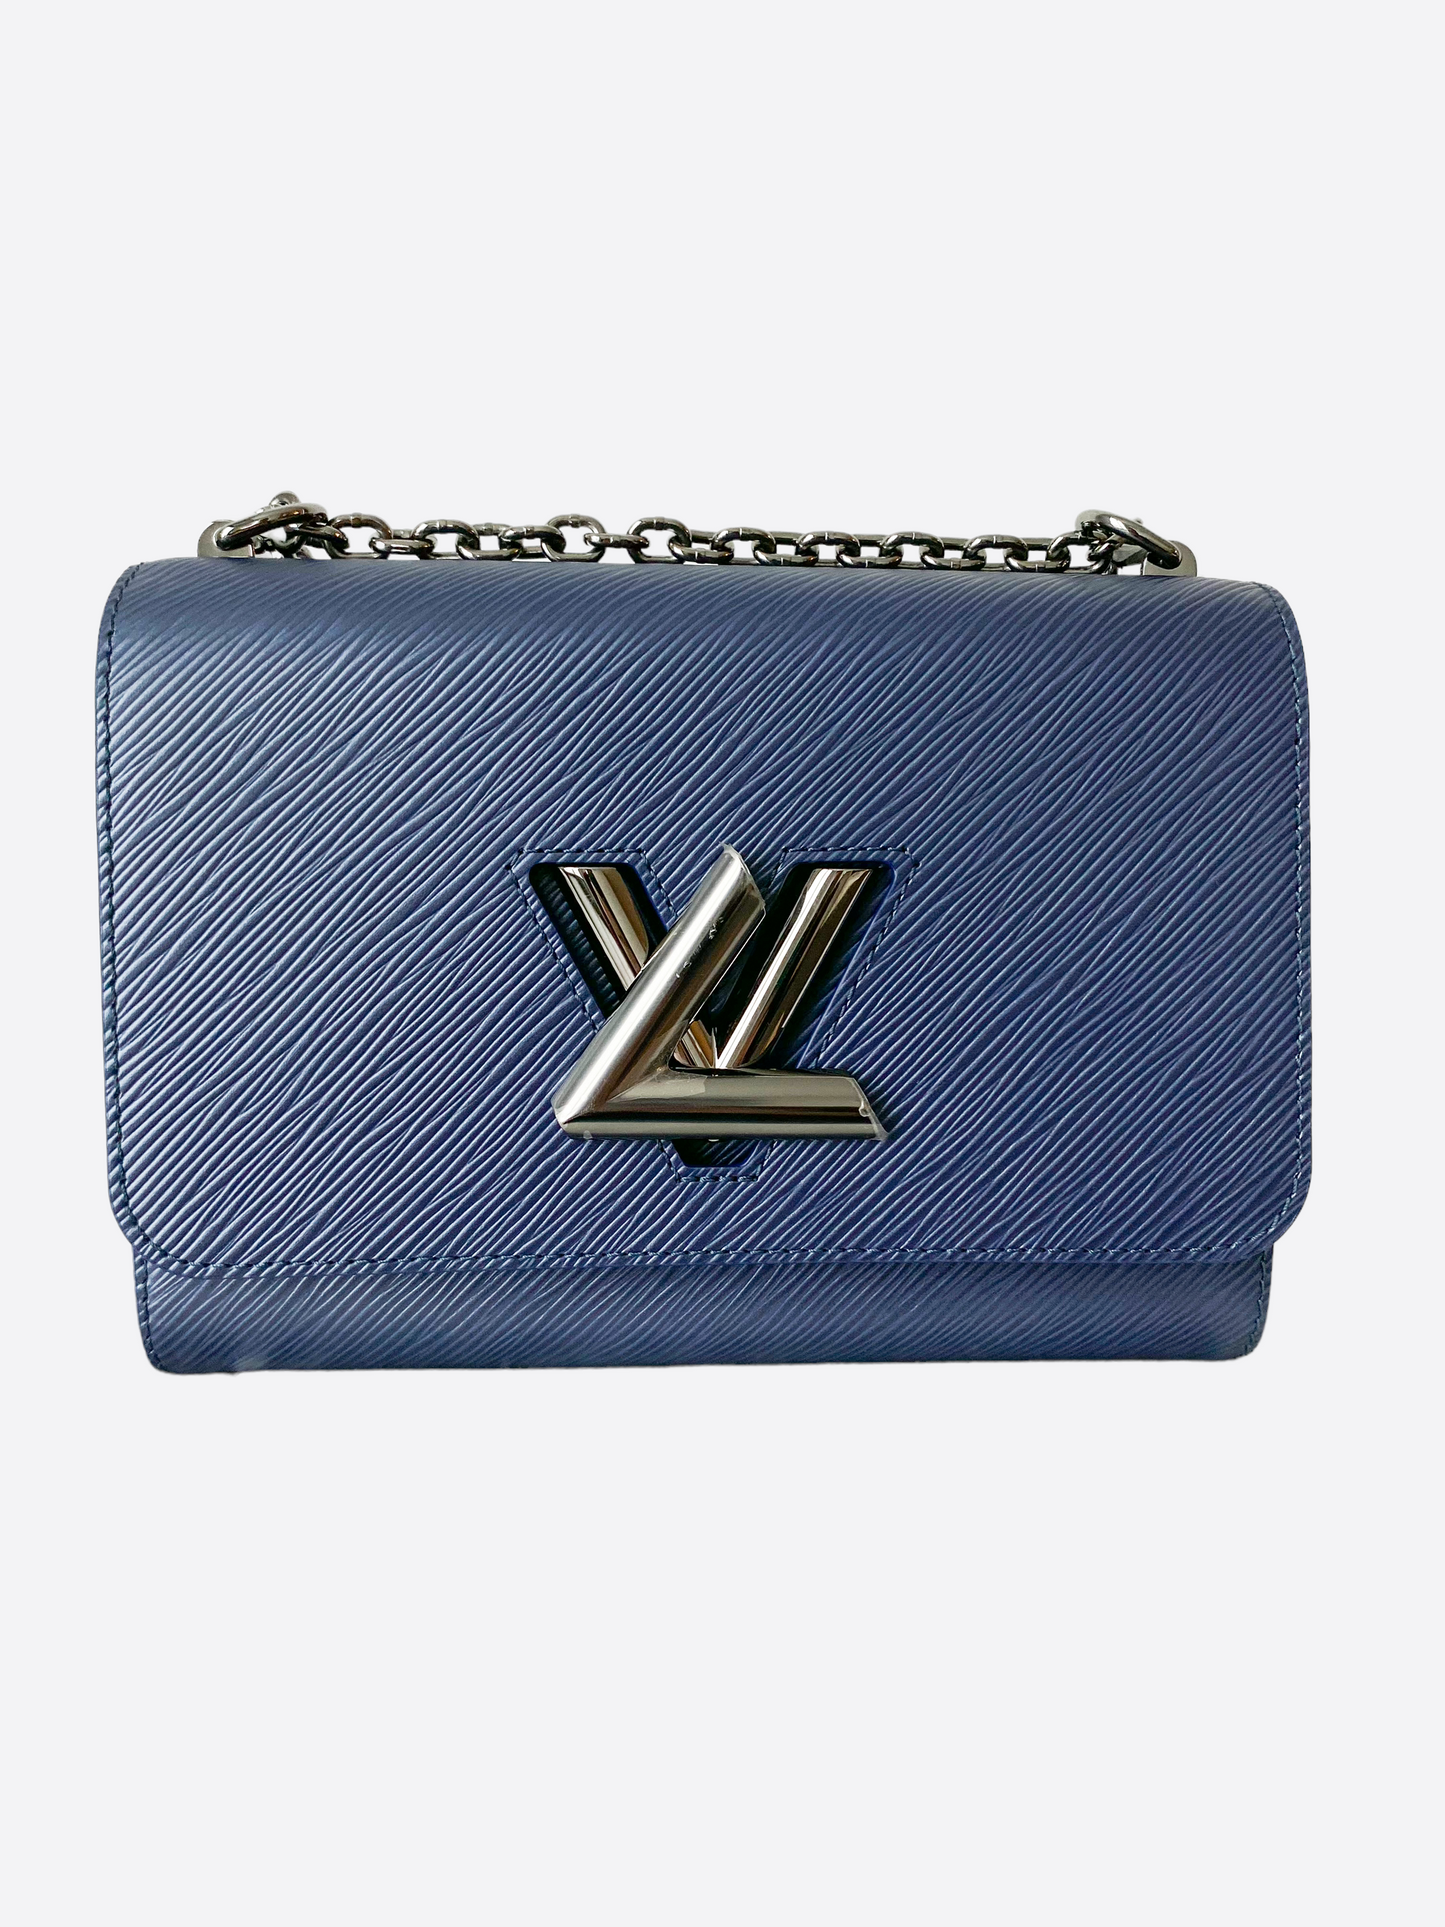 Louis Vuitton Blue EPI Leather Twist Shoulder Bag